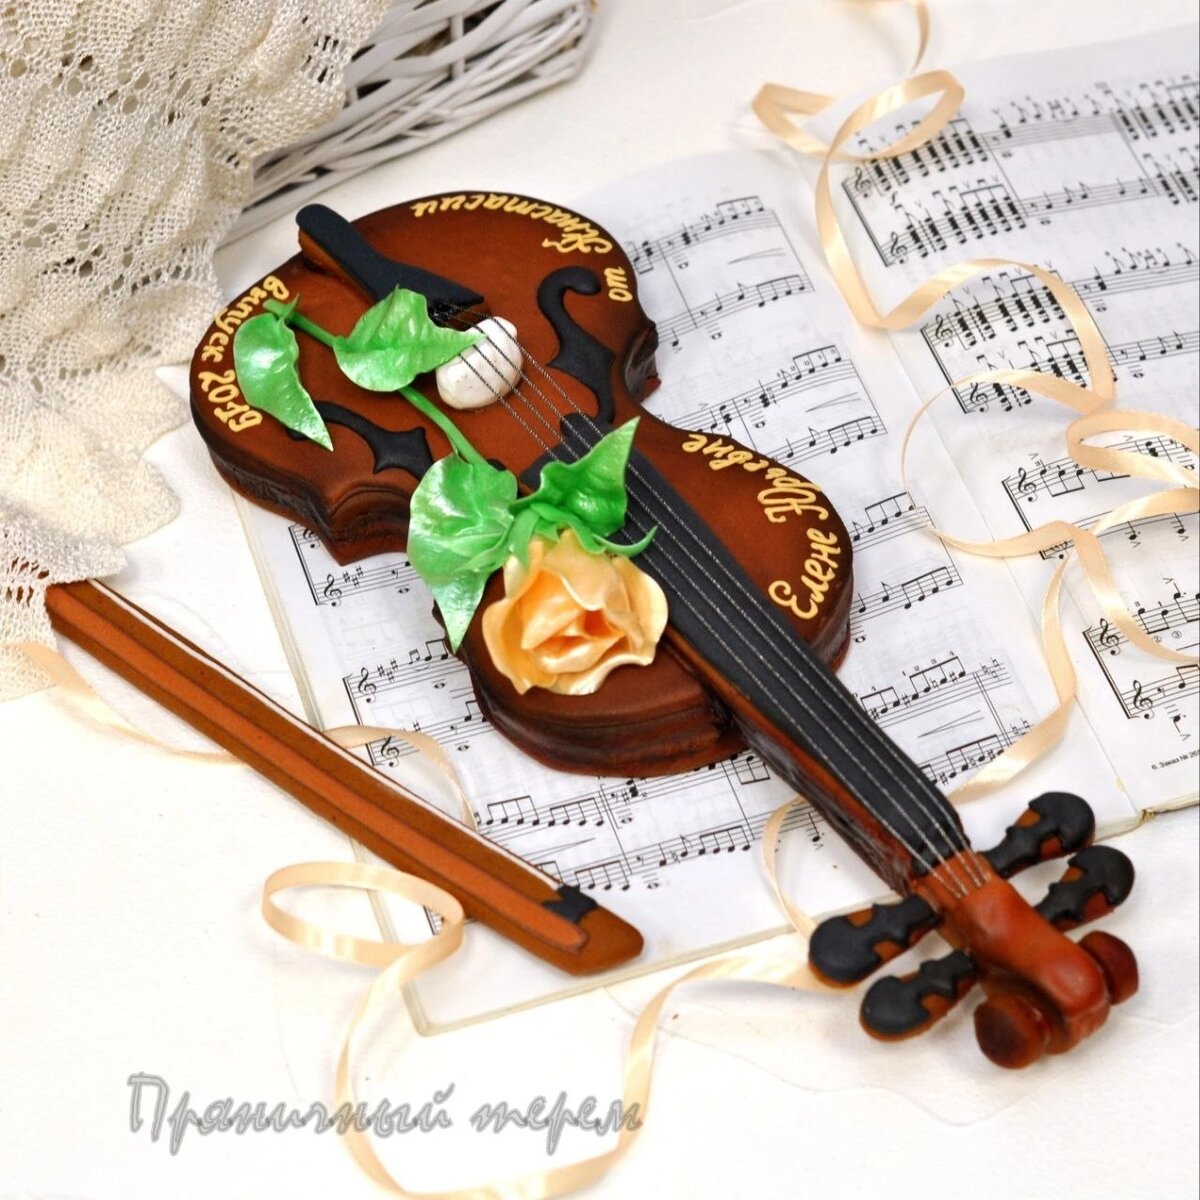    🪗Пряничные музыкальные инструменты – это не только вкусно, но и оригинально! Это подарок, который для некоторых может стать очень желанным! Например, если подарить:  1.-2